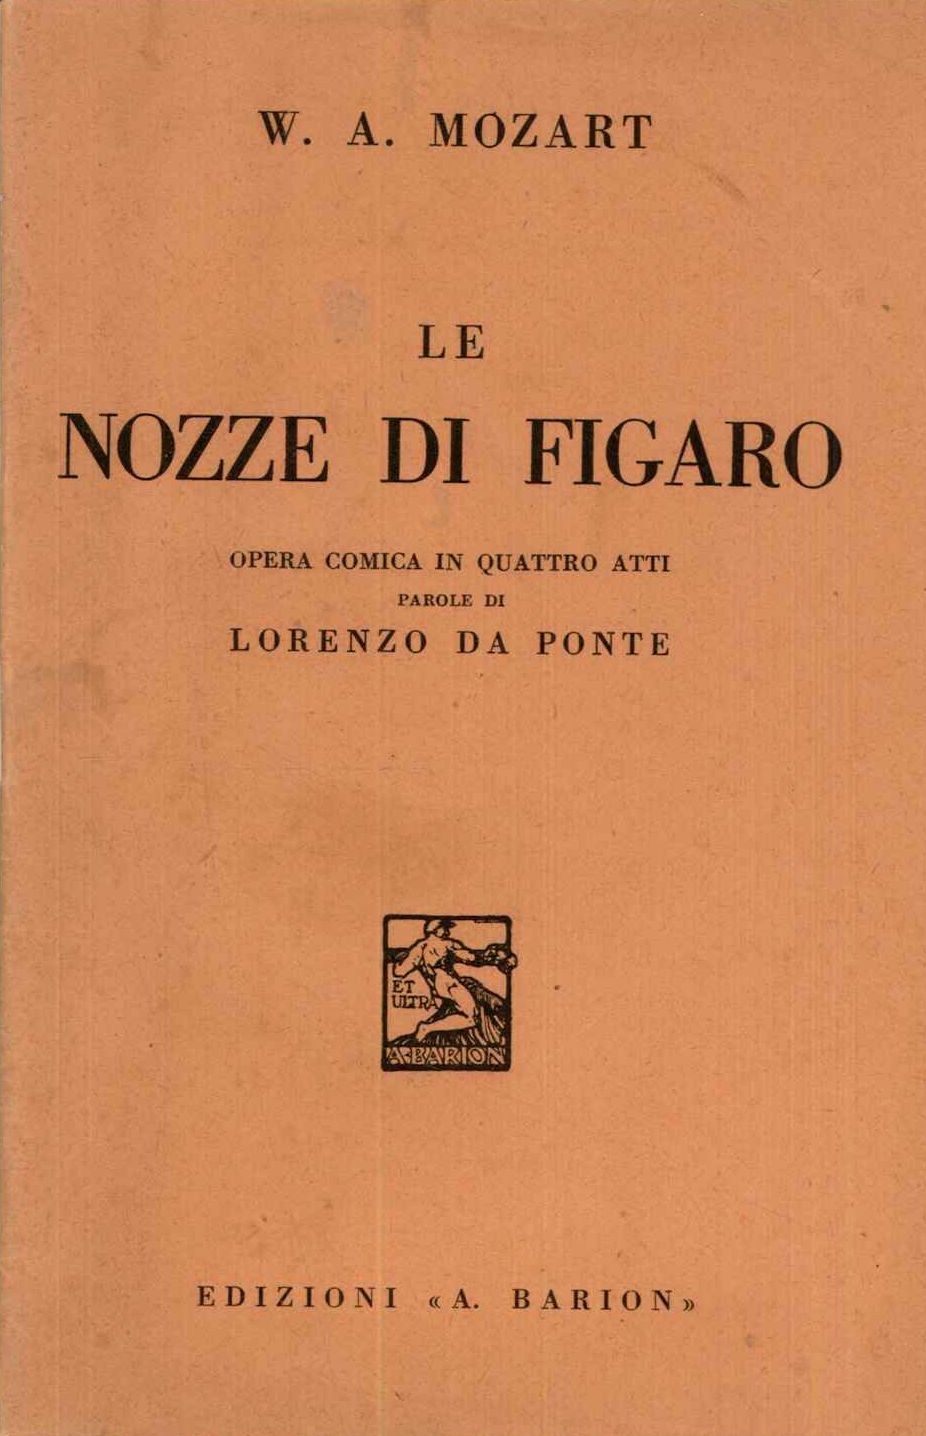 Le nozze di Figaro. Opera comica in quattro atti parole di Loren